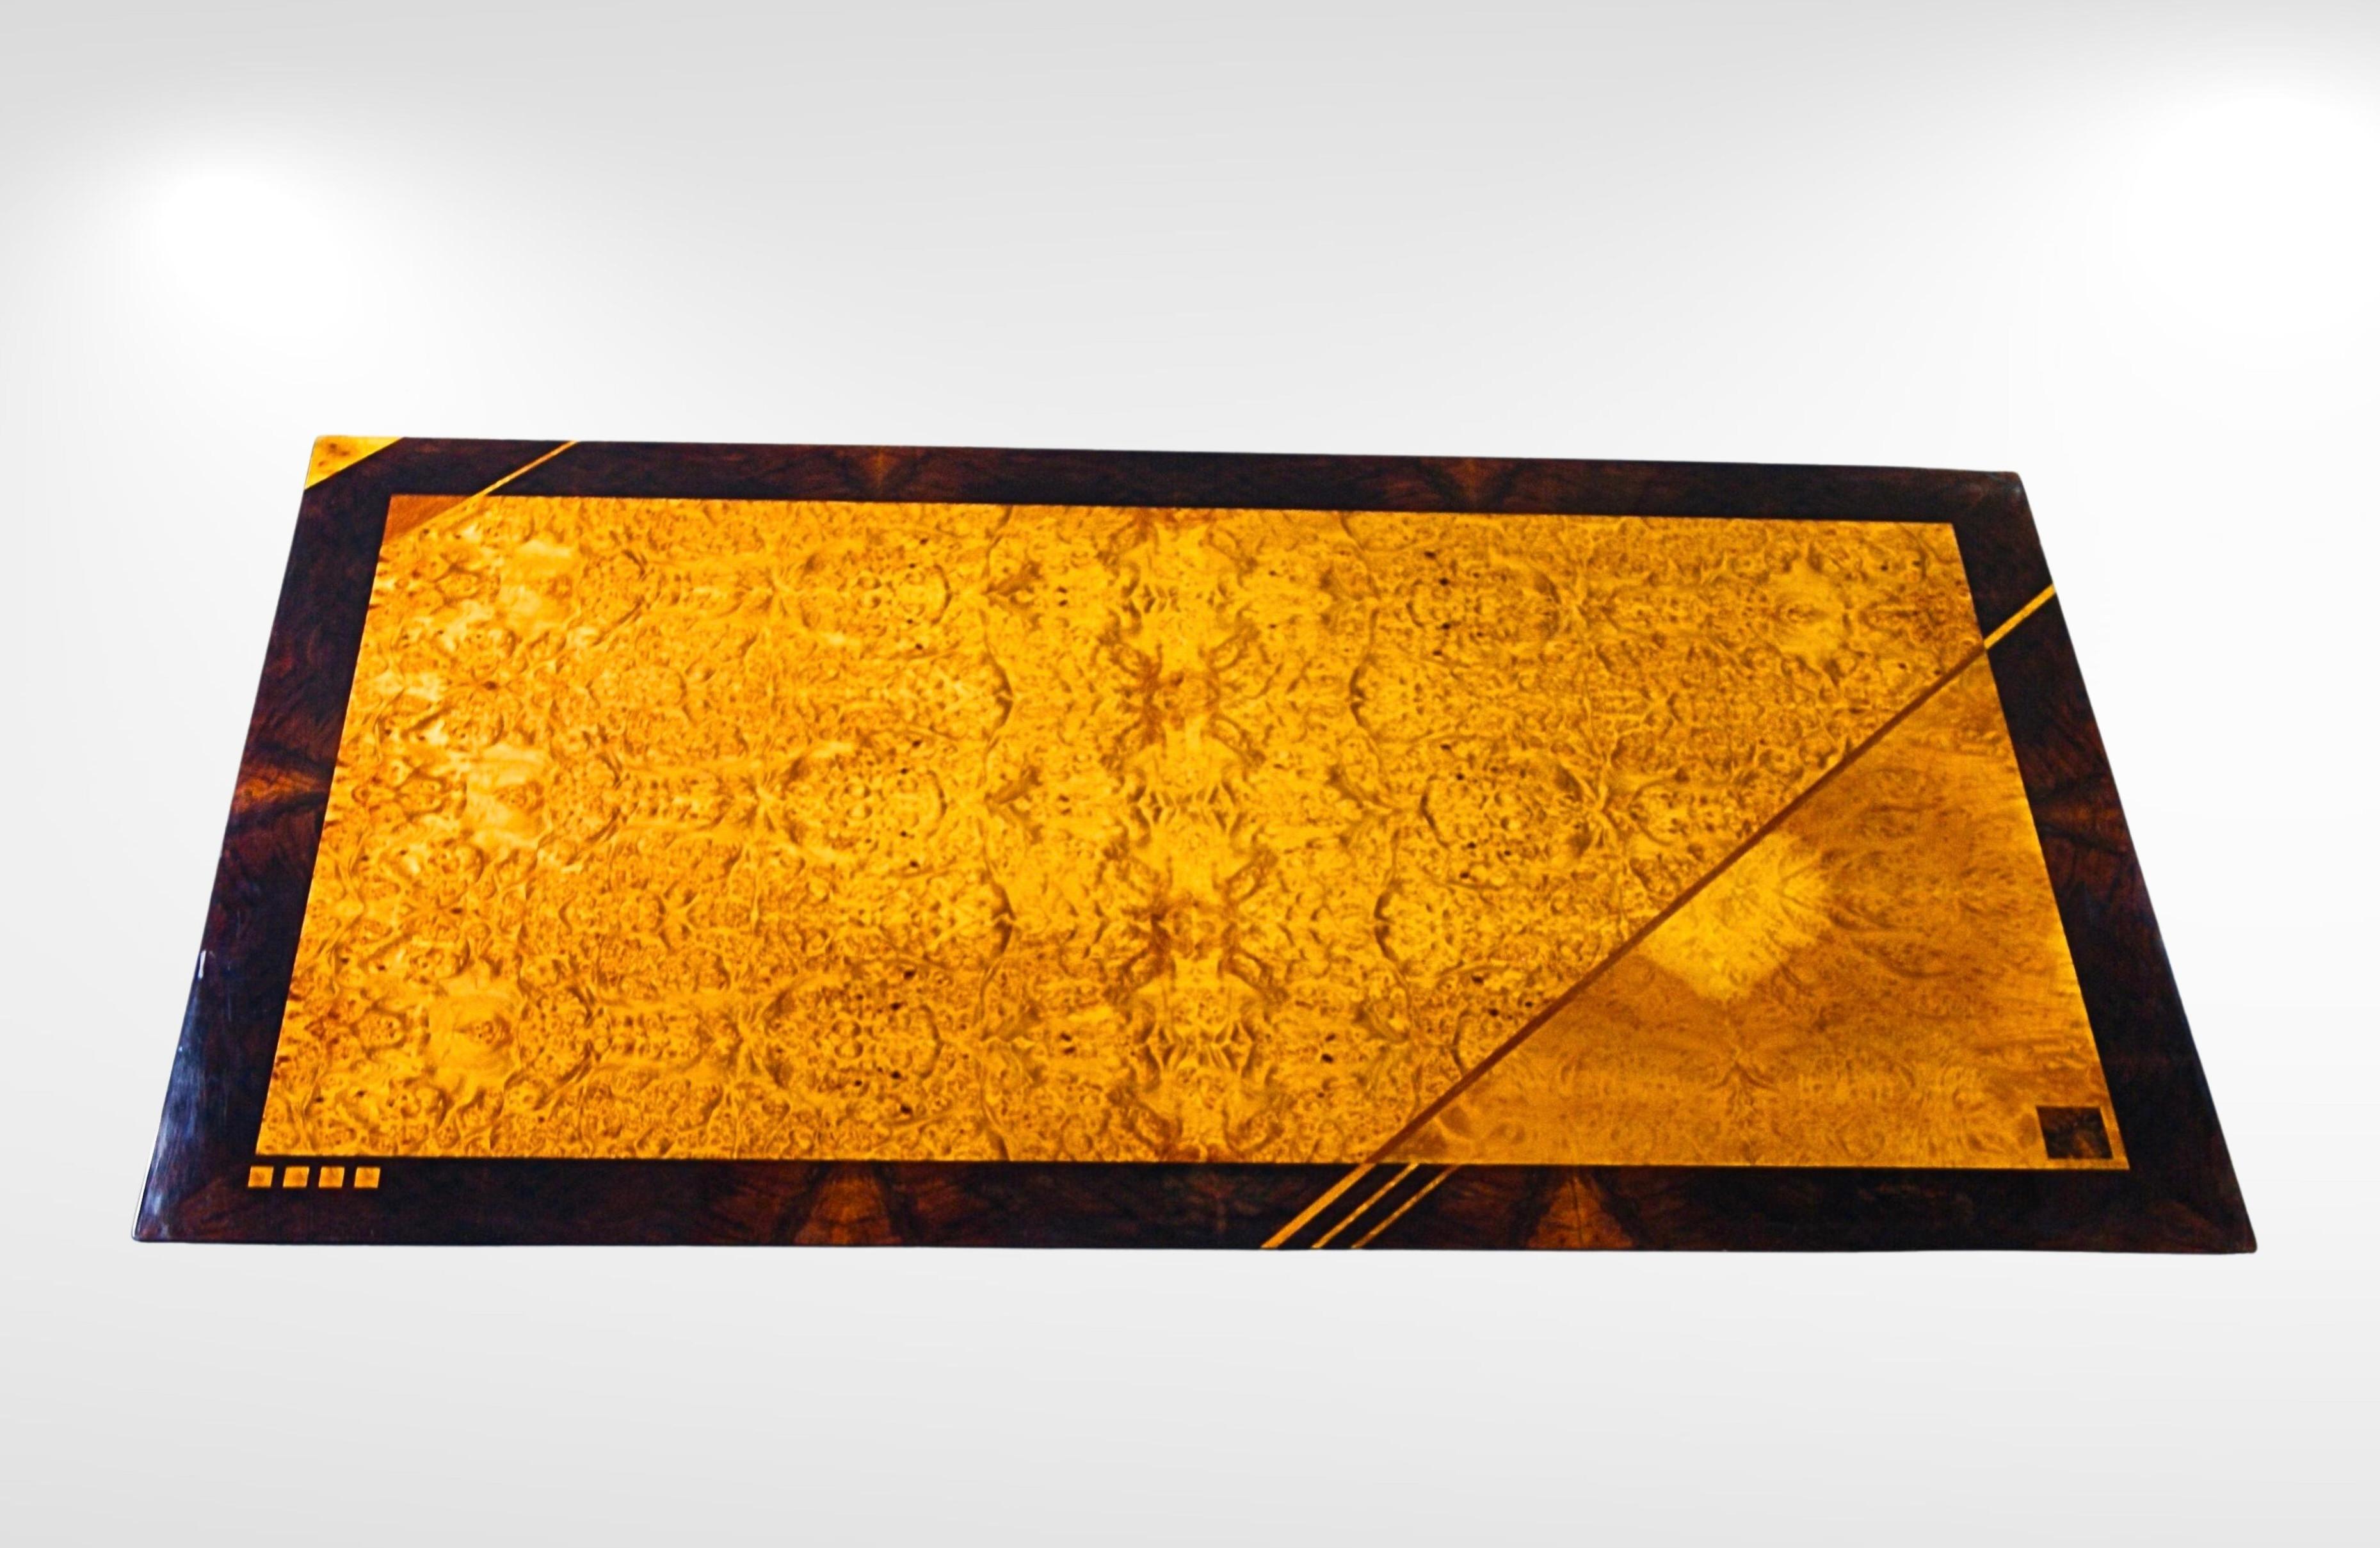 Esstisch aus Wurzelholz aus der Mitte des Jahrhunderts von Oscar Dell'Arredamento für Miniforms Italien, datiert 1974.
Luxuriöser Esstisch mit einer Mischung aus Wurzelholz, das geschnitten, gefügt, geschnitten und in Segmente geteilt wurde, um ein